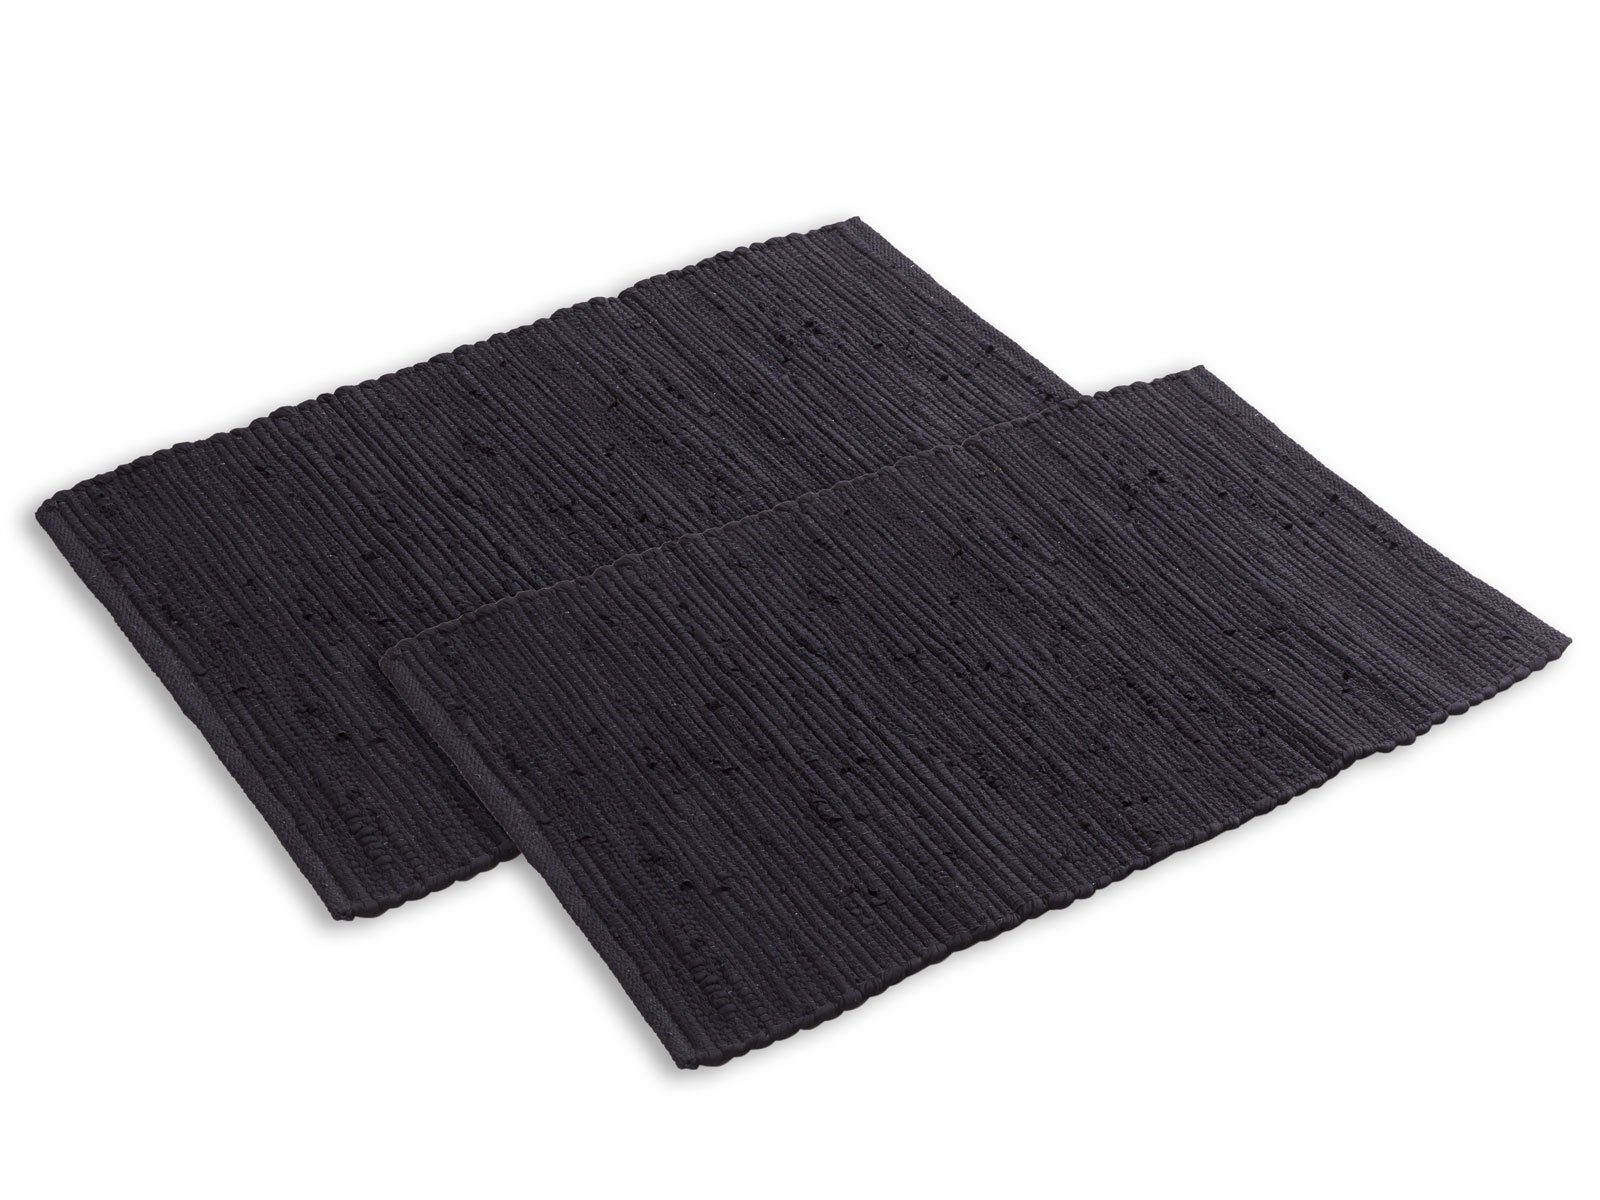 Teppich Badteppich Set 2er groß 80x50 cm 100% Baumwolle Badematte vers. Farben, Minara schwarz